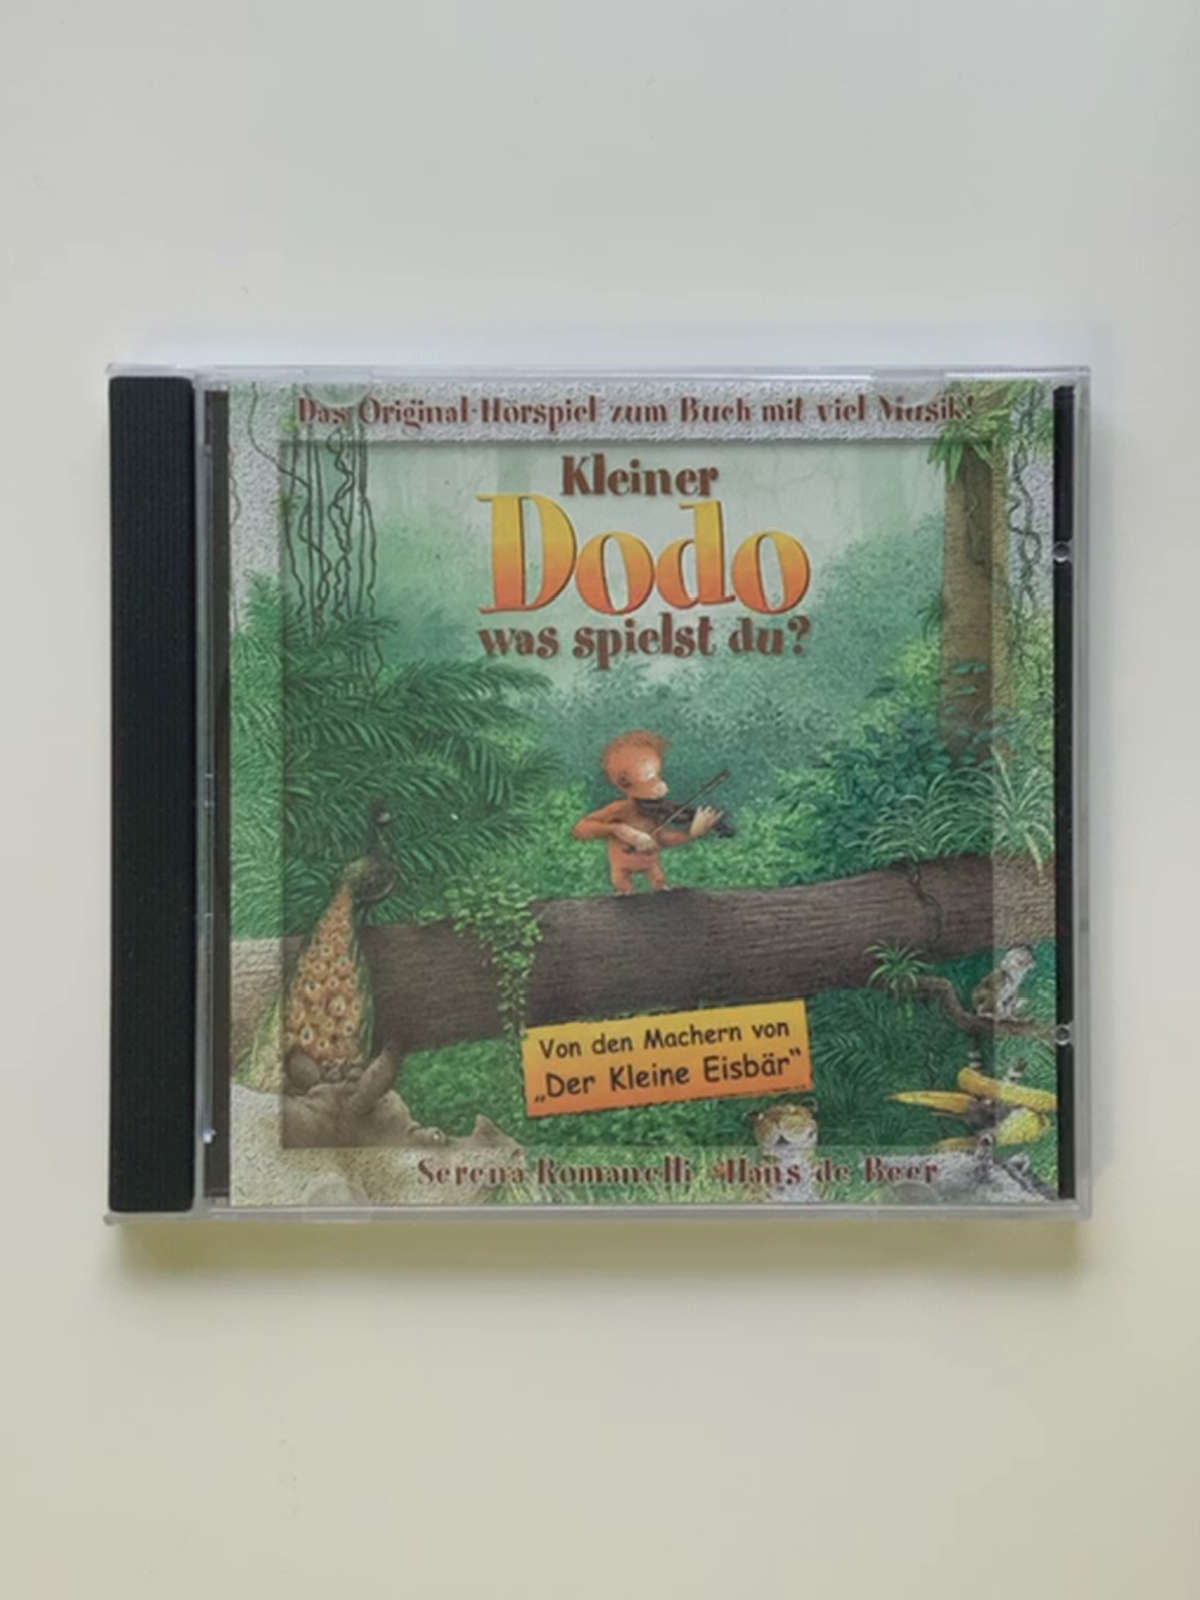 Kleiner Dodo, was spielst du! CD . Das Original-Hörspiel zum Buch mit viel Musik - Serena Romanelli - Hans de Beer